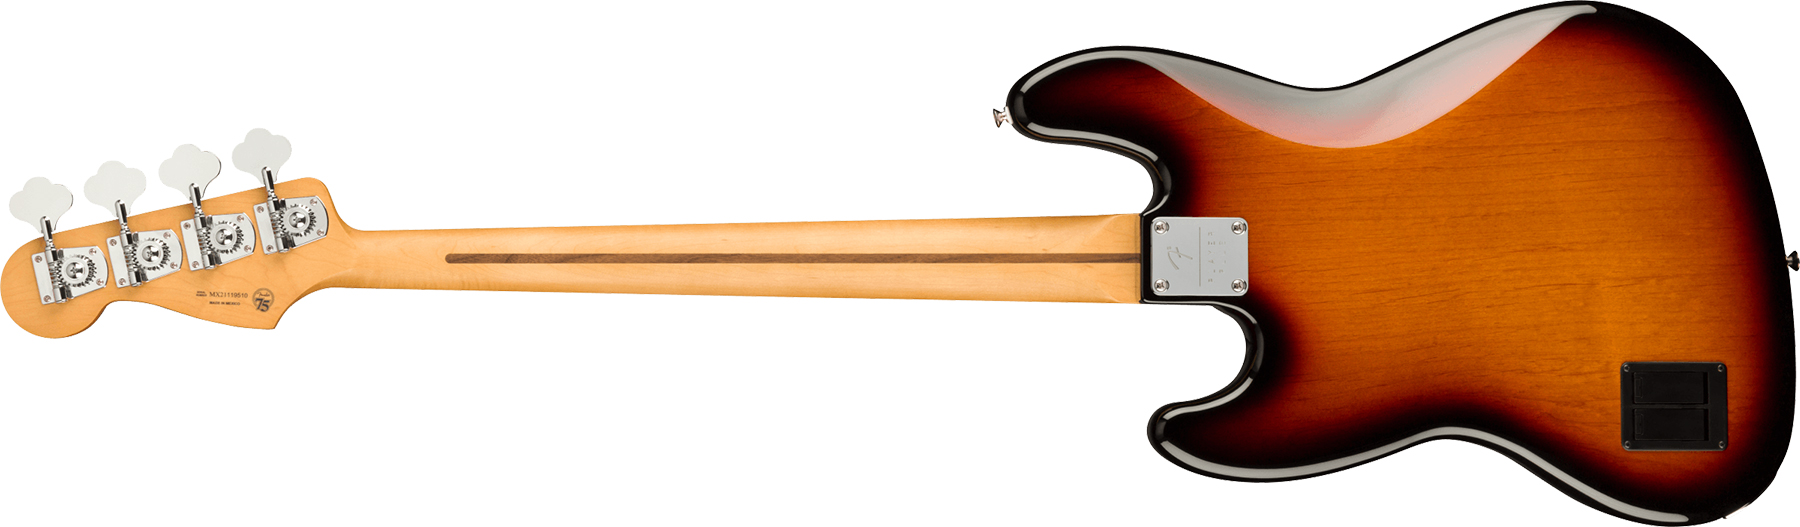 Fender Jazz Bass Player Plus Mex Active Pf - 3-color Sunburst - Basse Électrique Solid Body - Variation 1